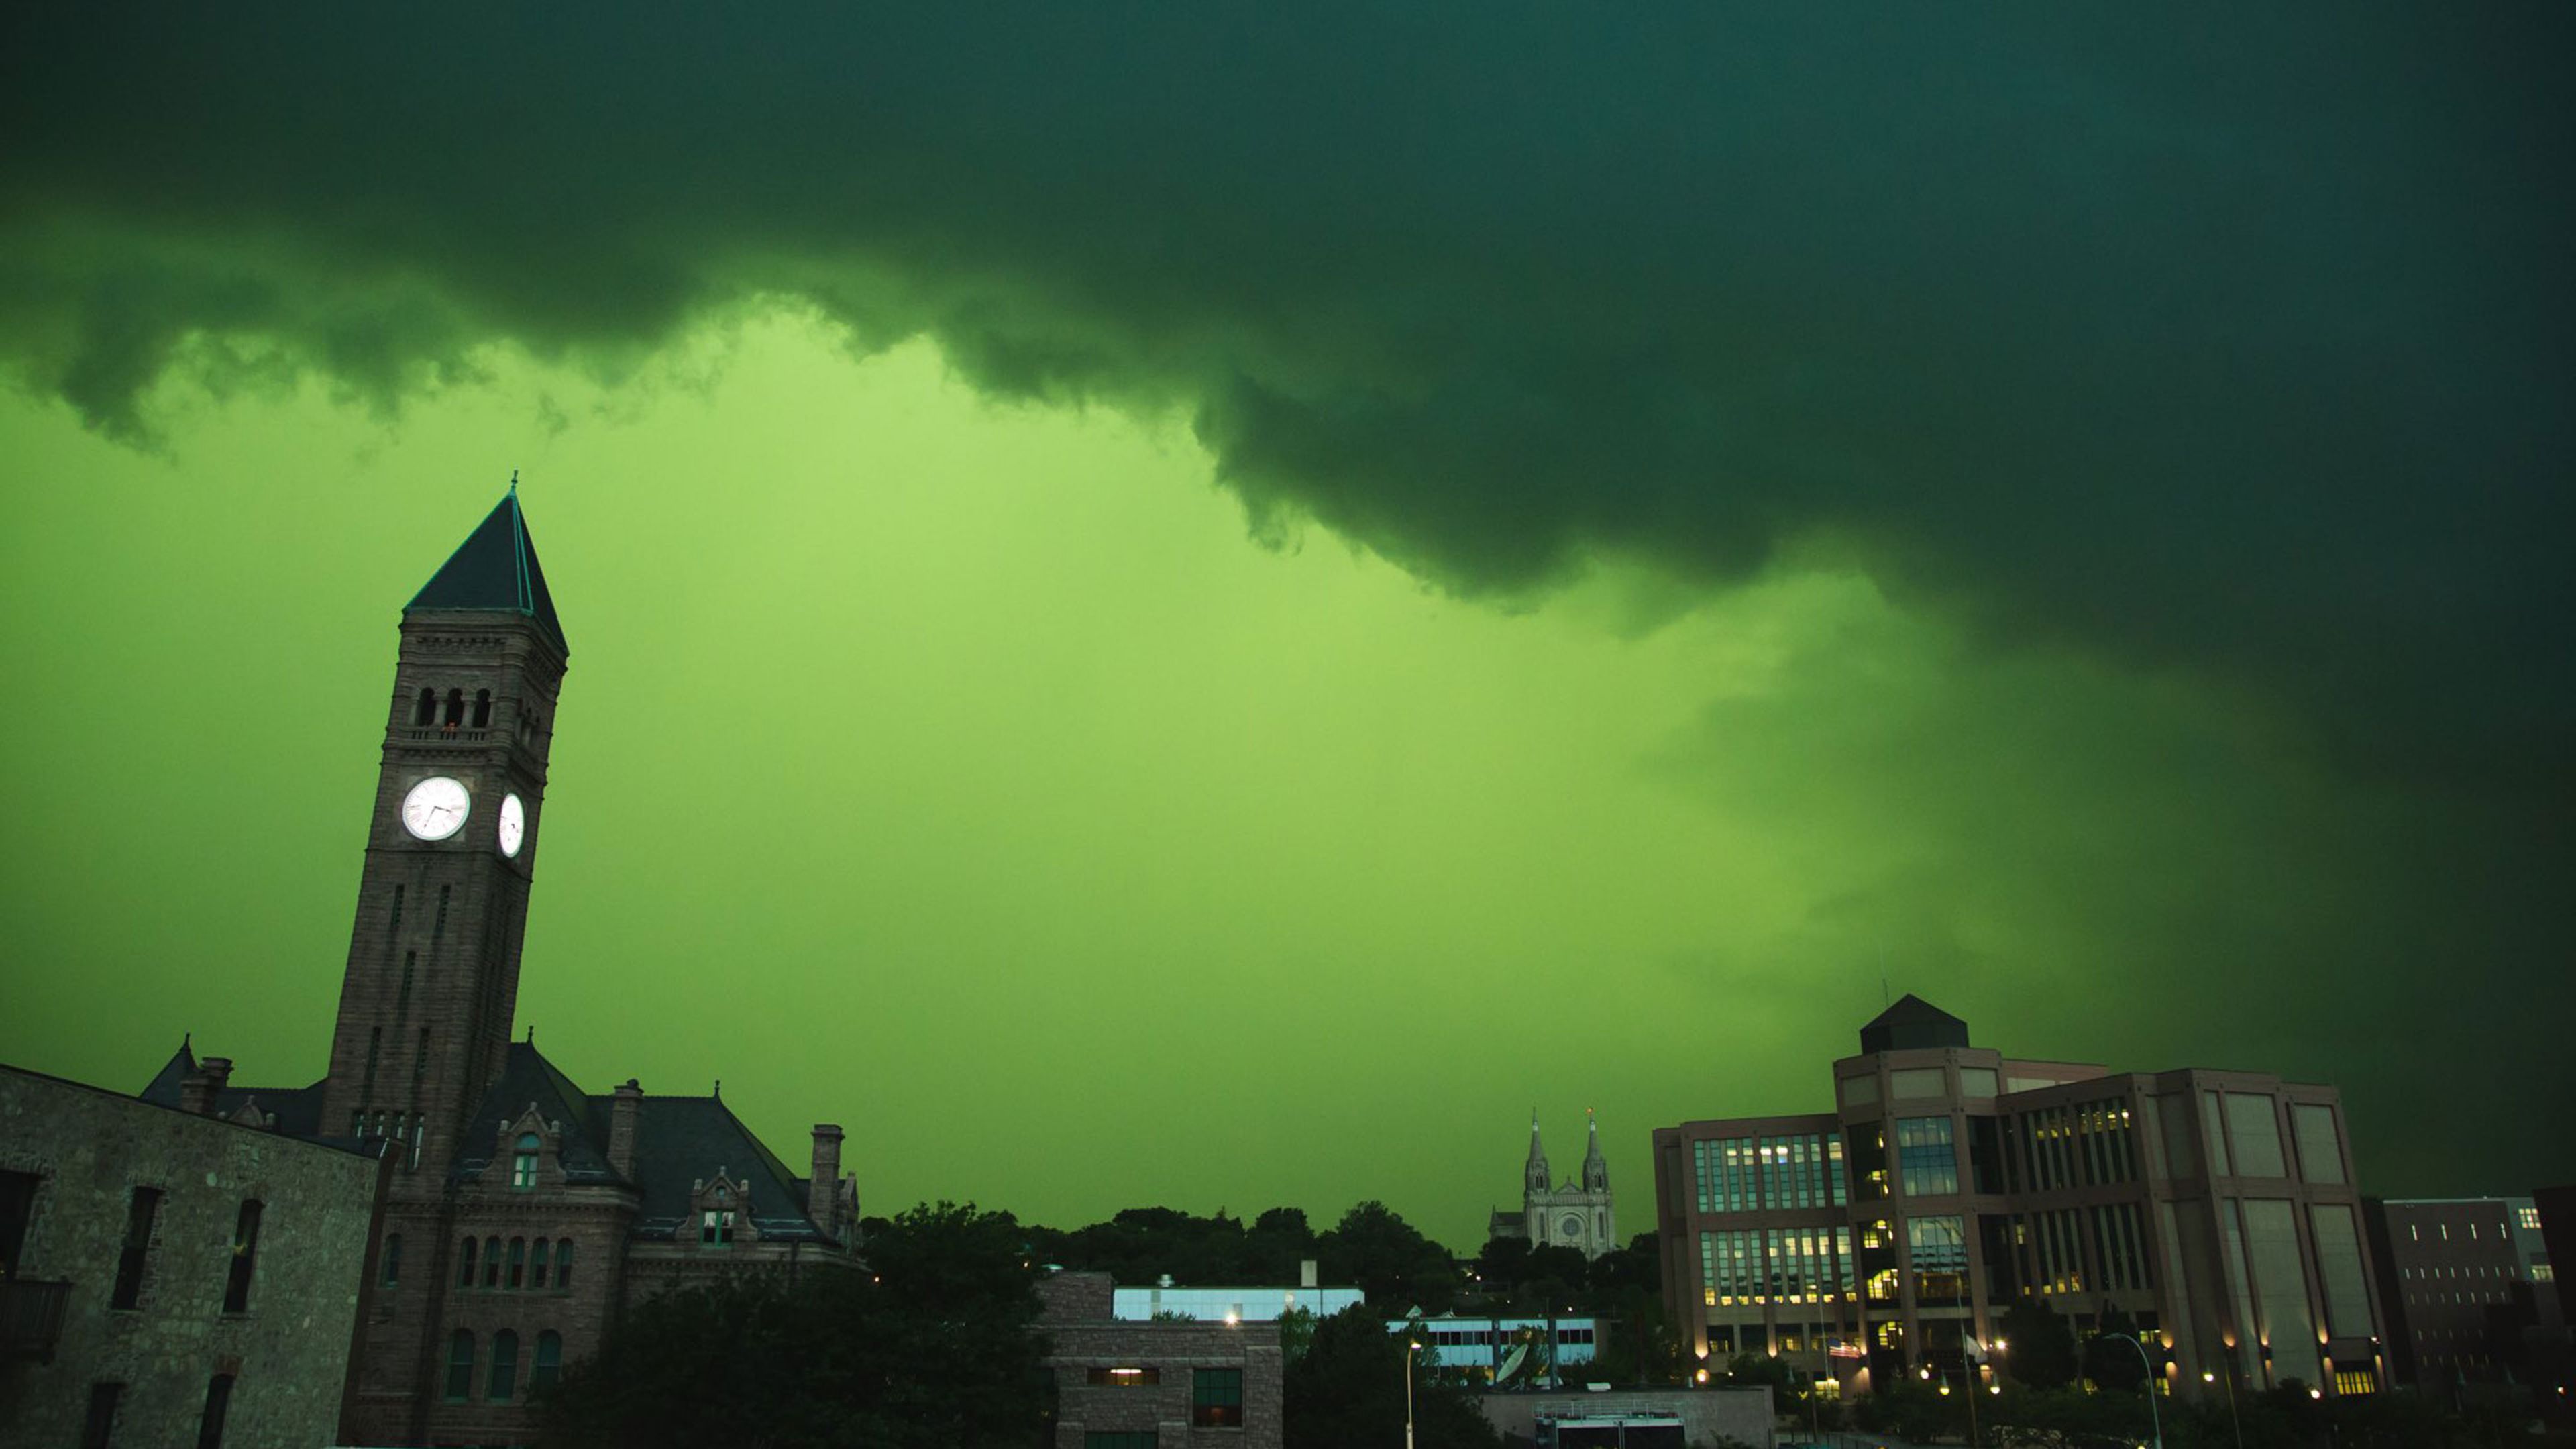 Una extraña tormenta vuelve el cielo de color verde cual película de catástrofes